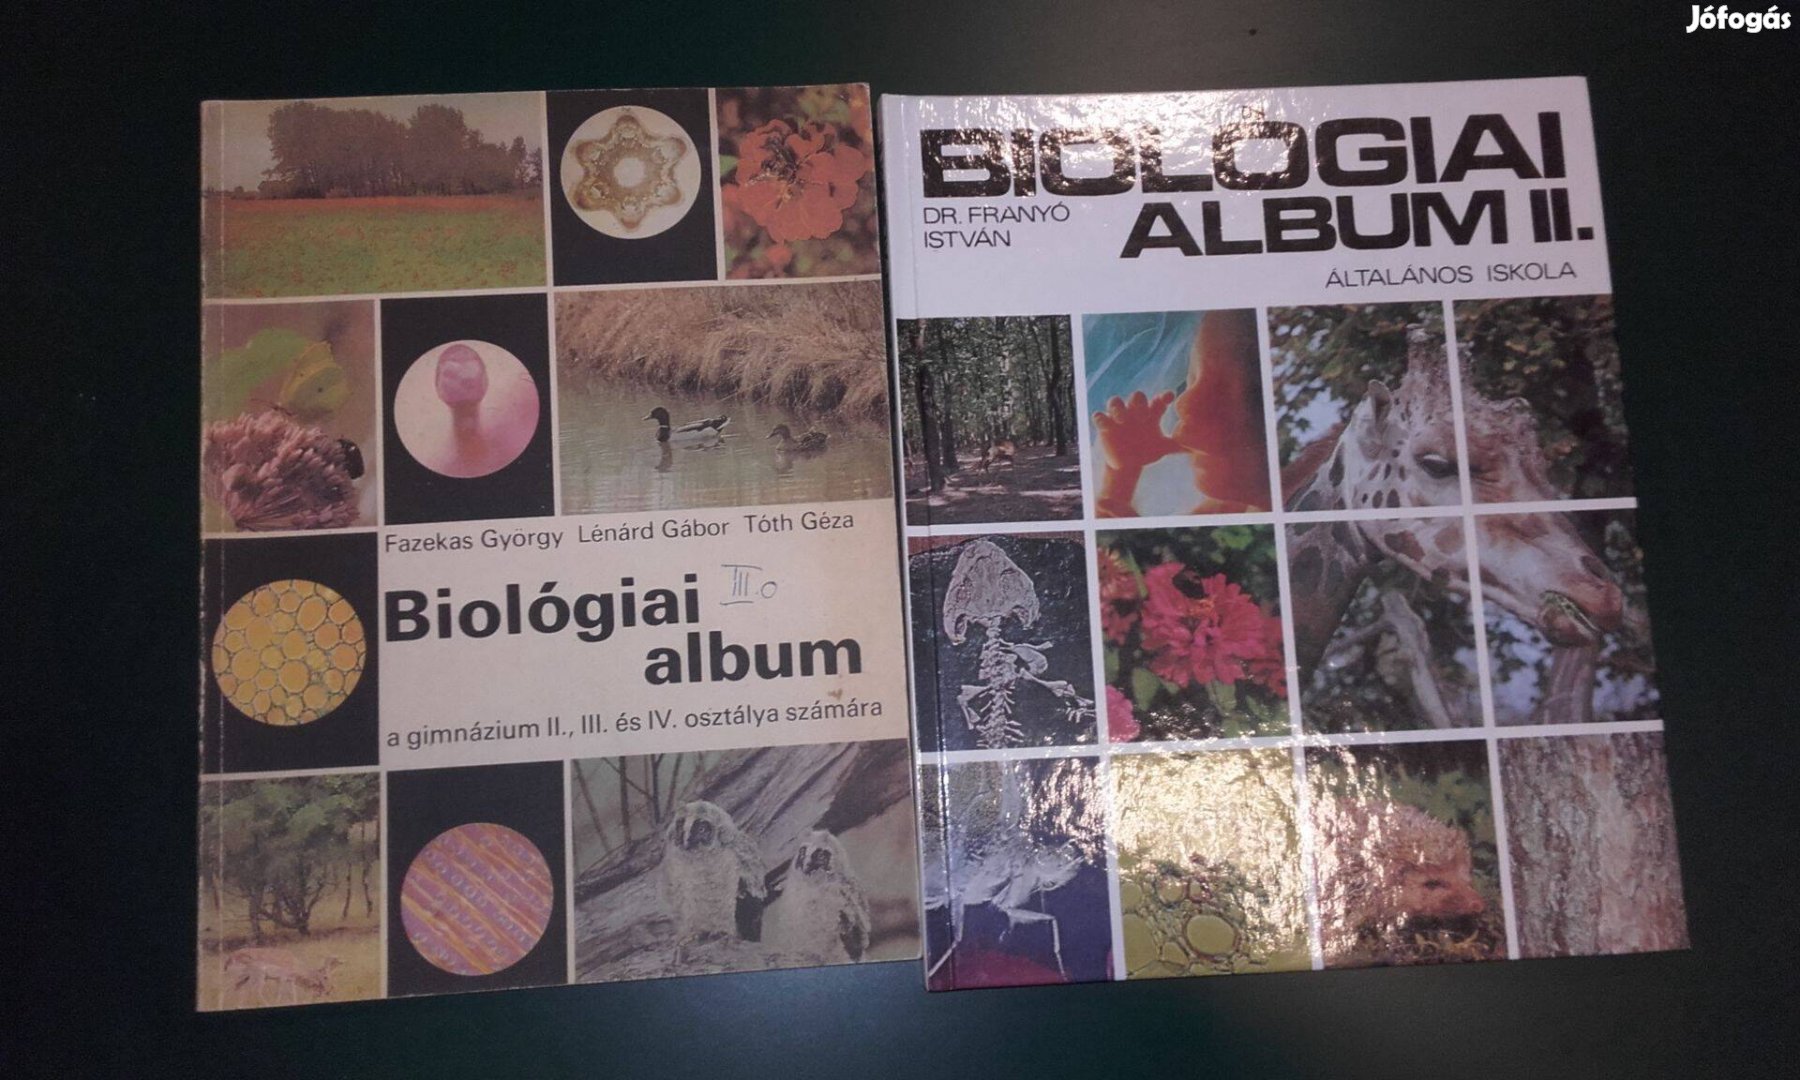 Biológiai album, biológia könyv, középiskola és általános iskola